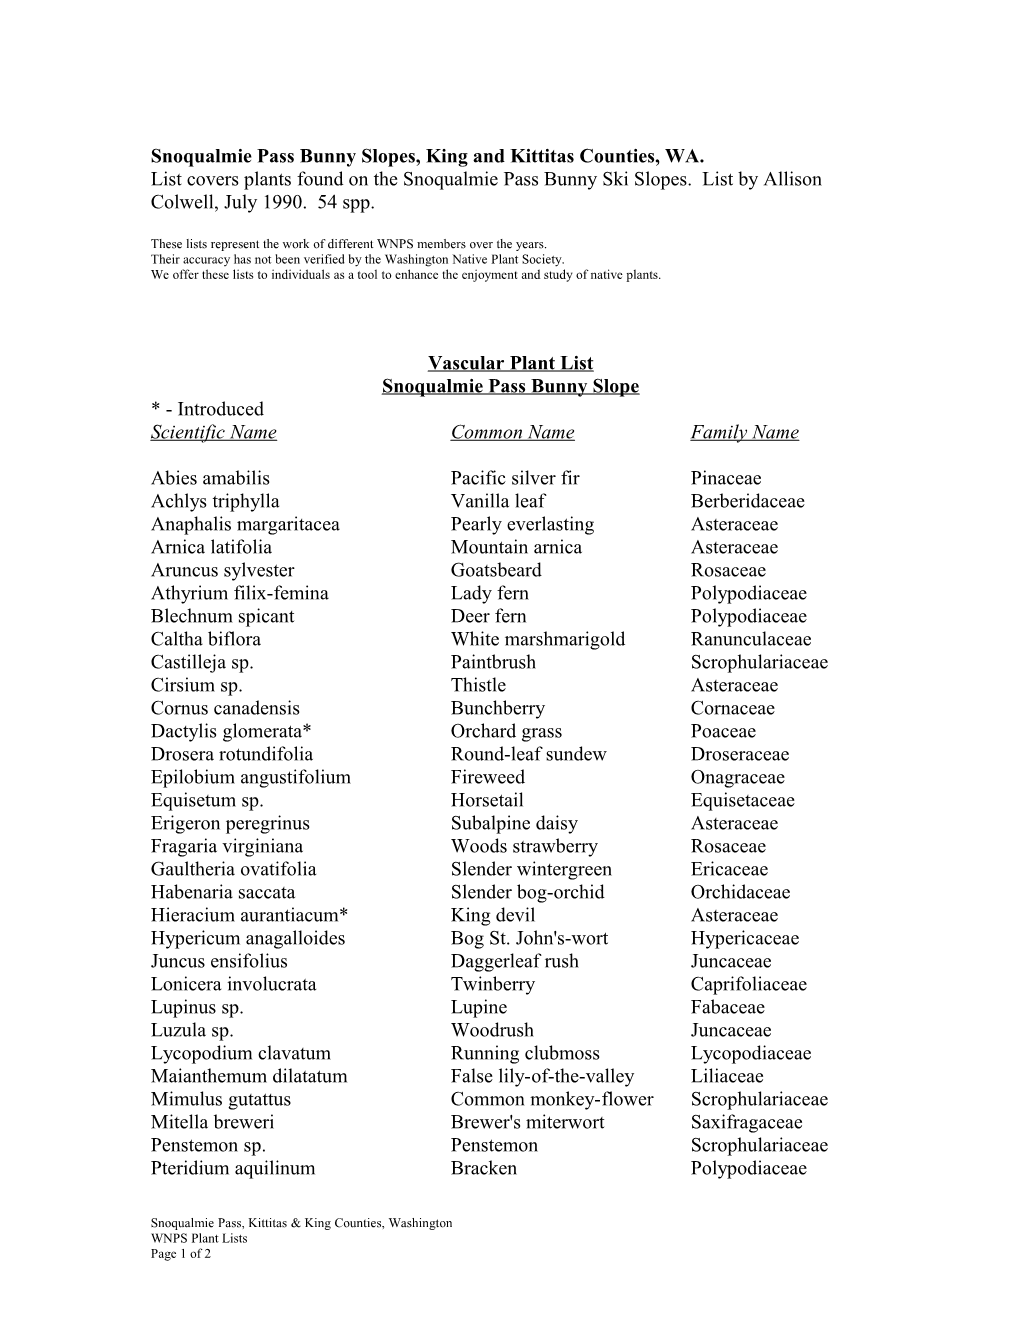 Vascular Plant List s14